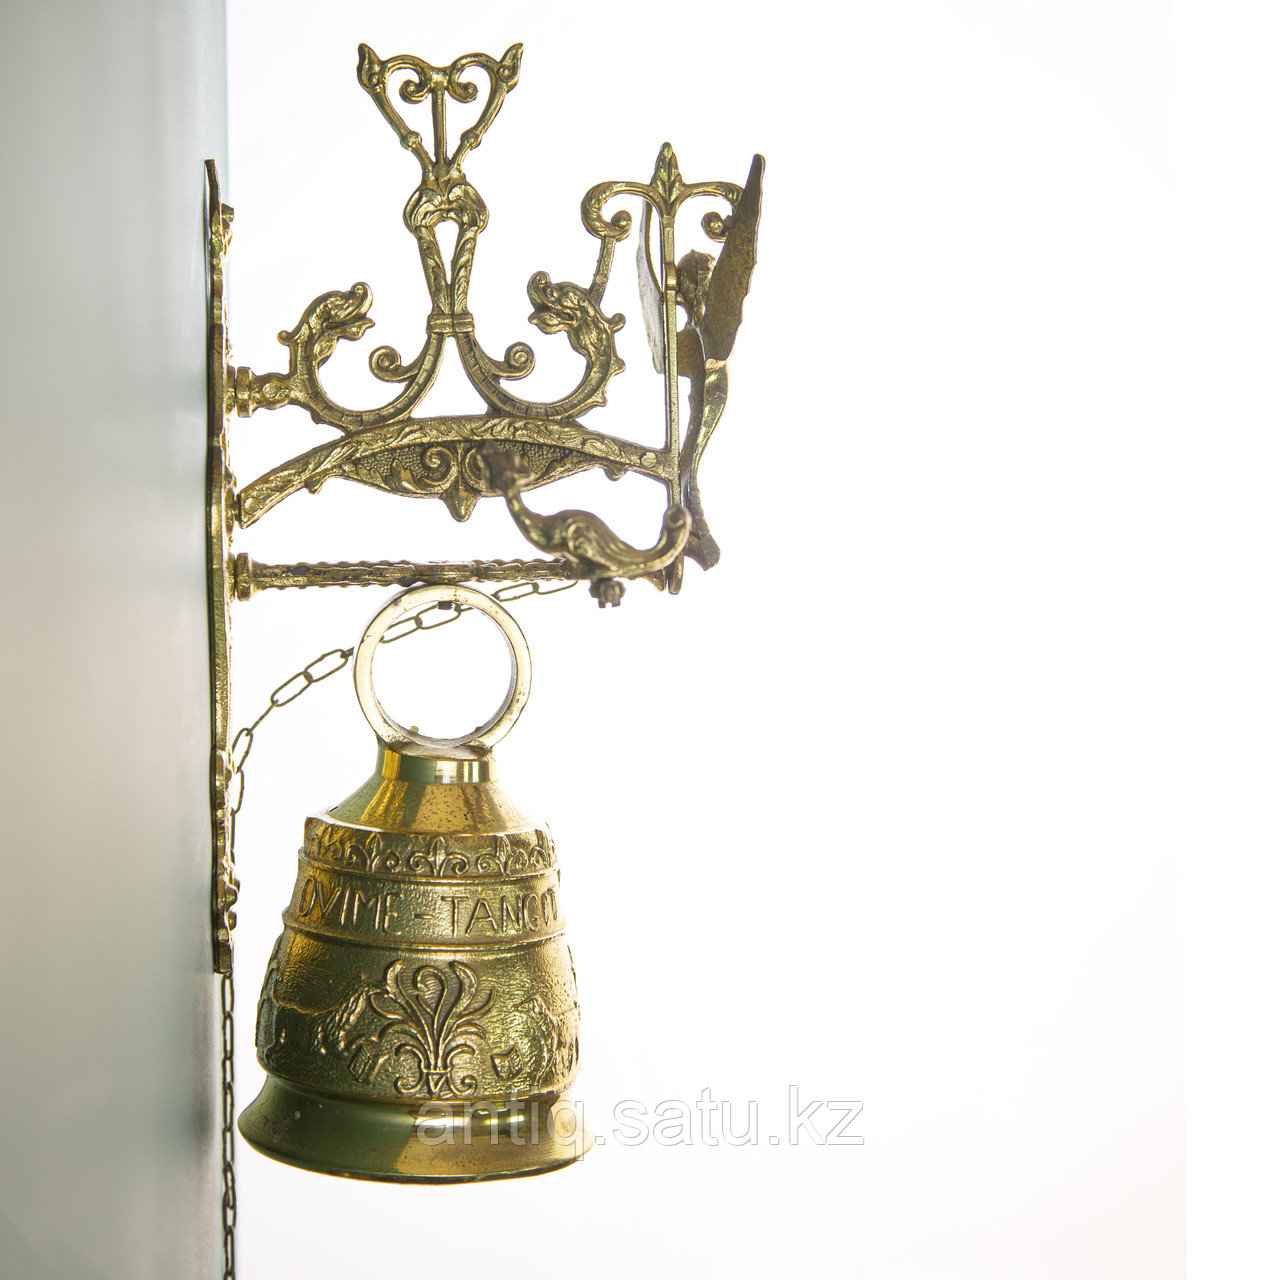 Дверной колокольчик из бронзы Италия. Середина ХХ века Бронза, литье